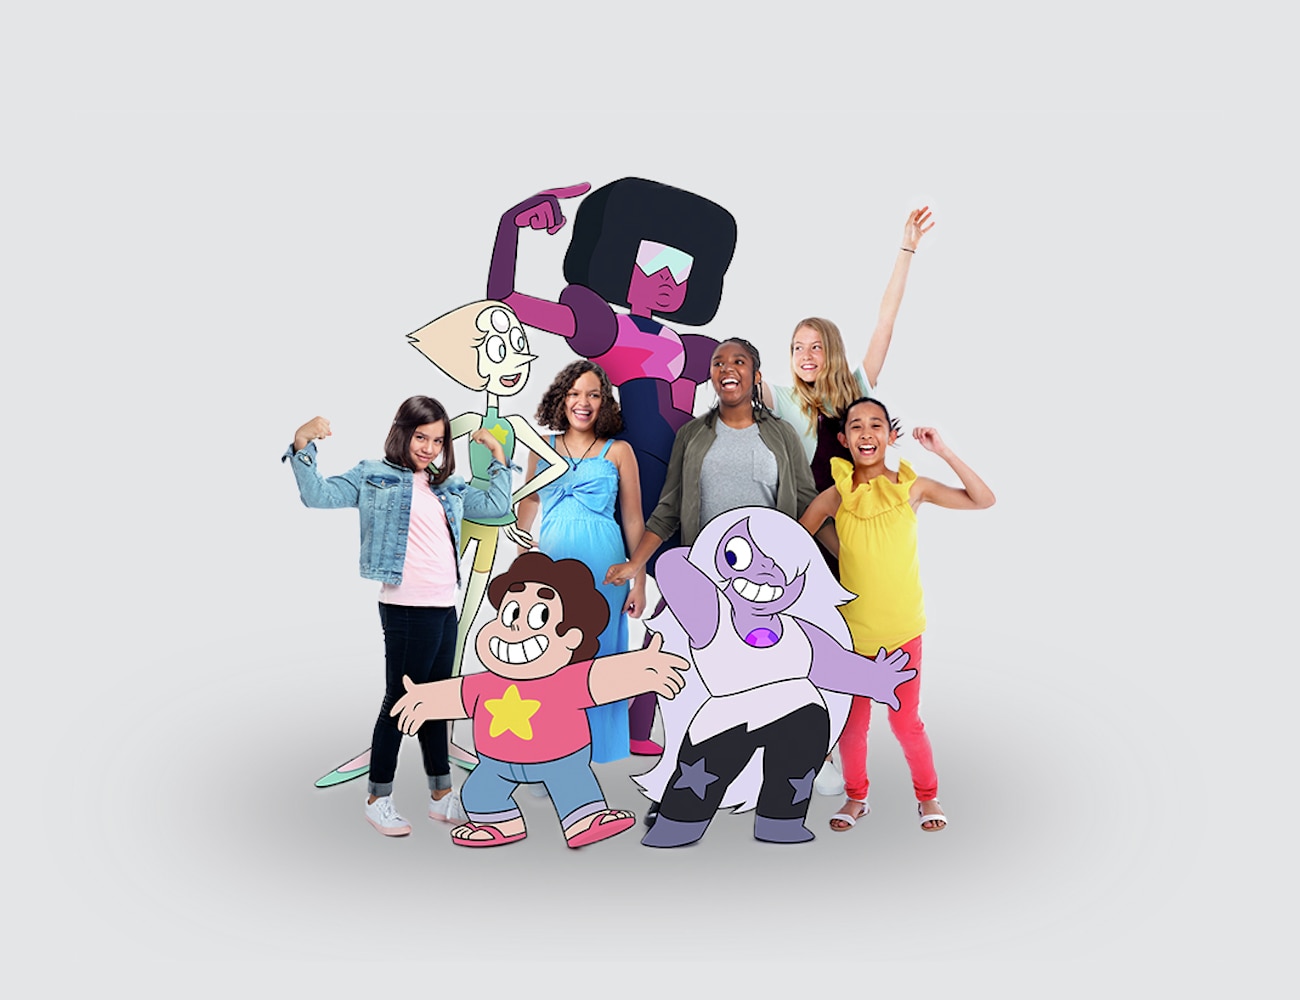 Dove and Cartoon Network Partnership